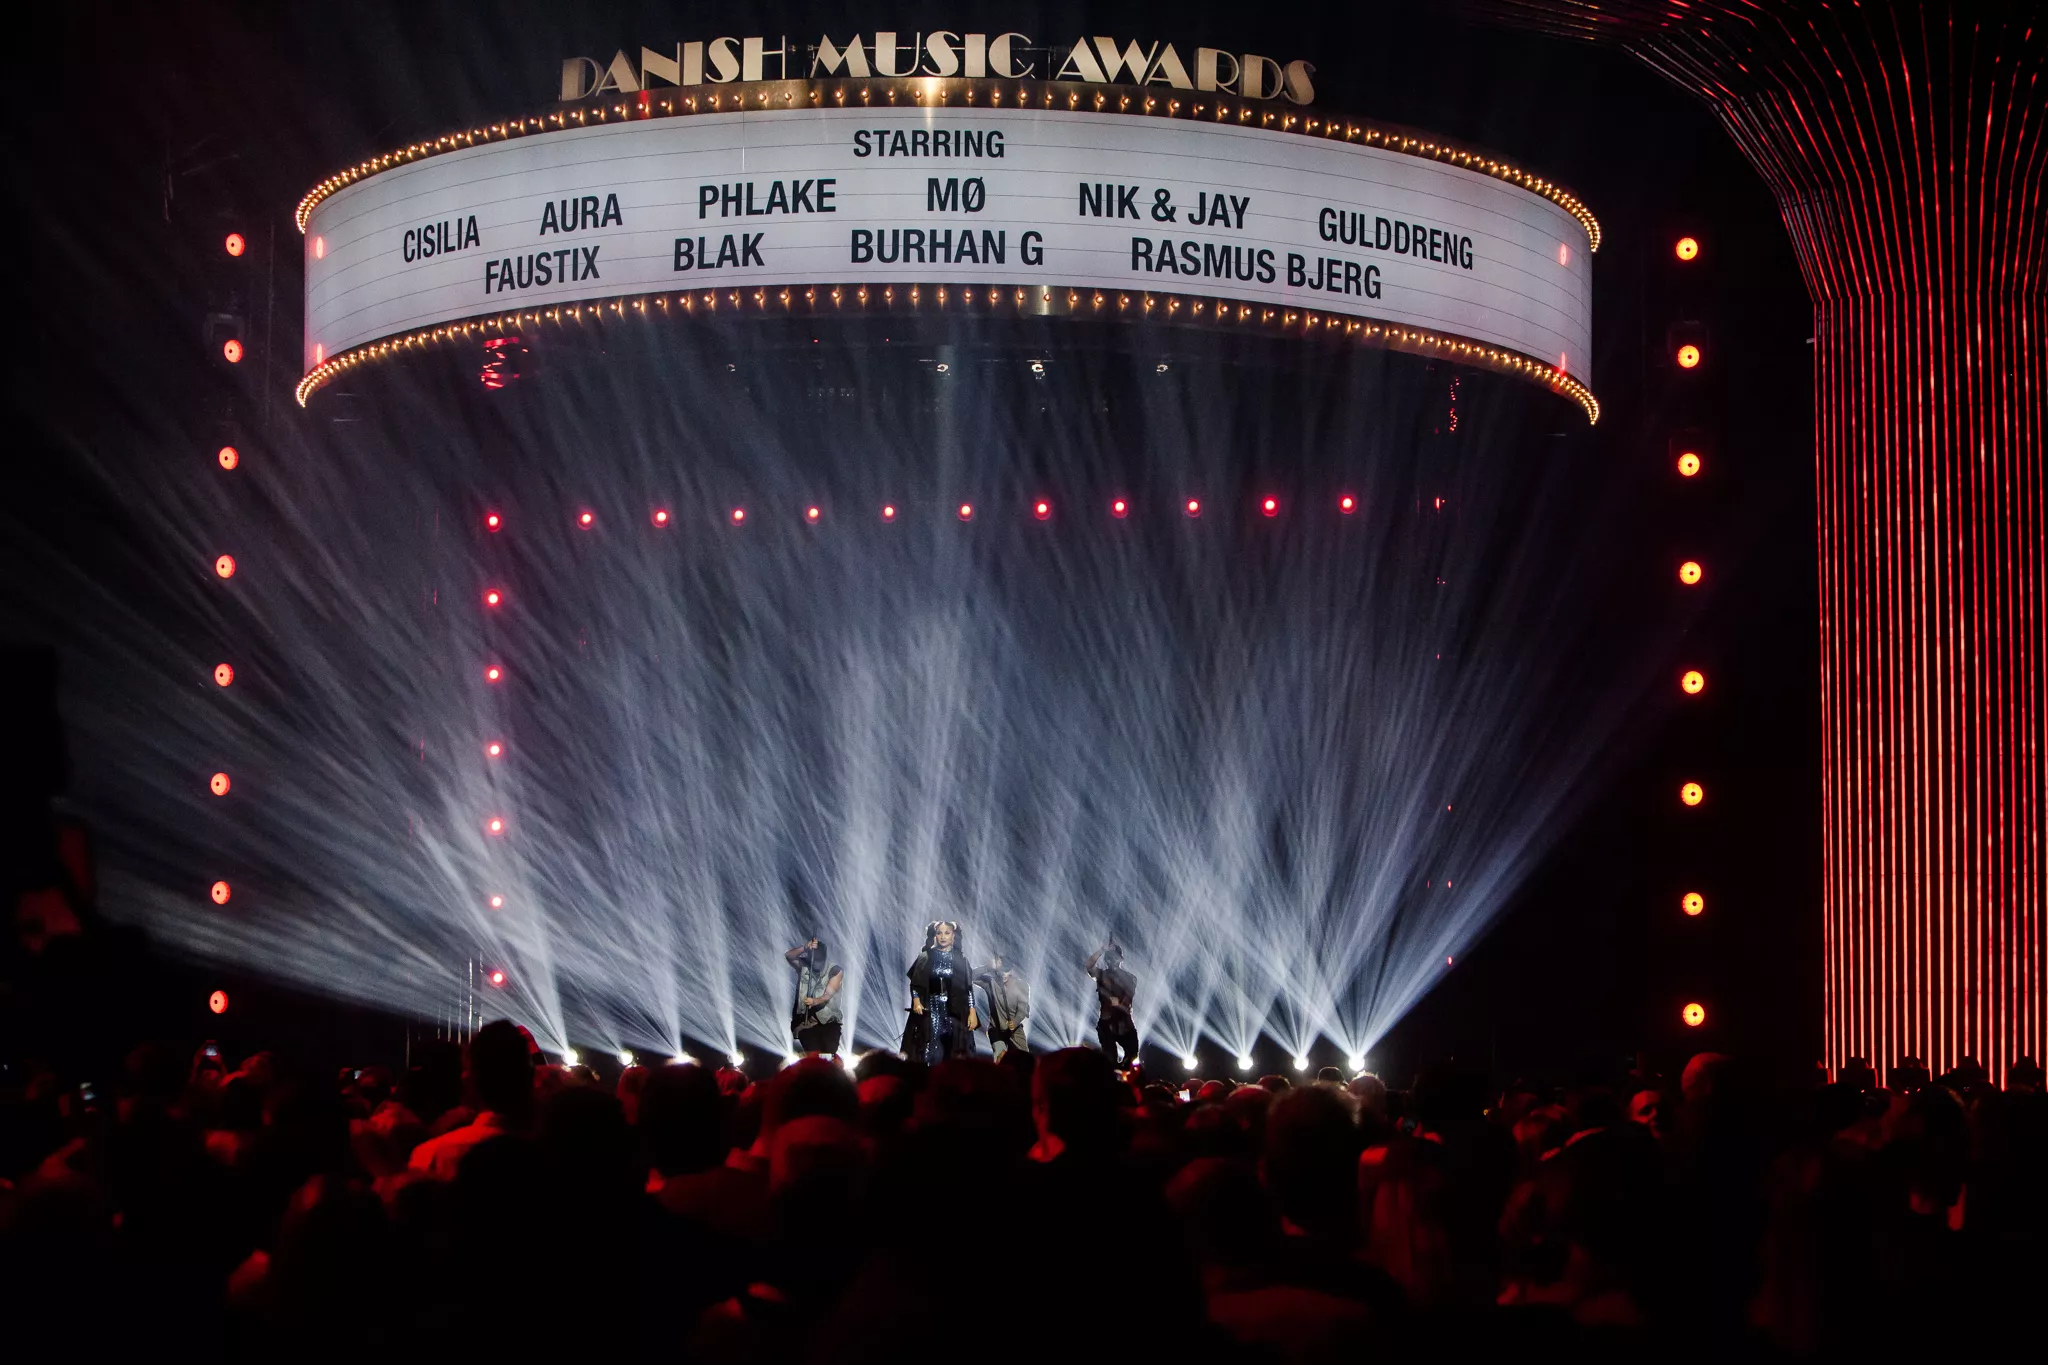 TV 2-redaktør svarer på kritik fra Mads Langer om Danish Music Awards